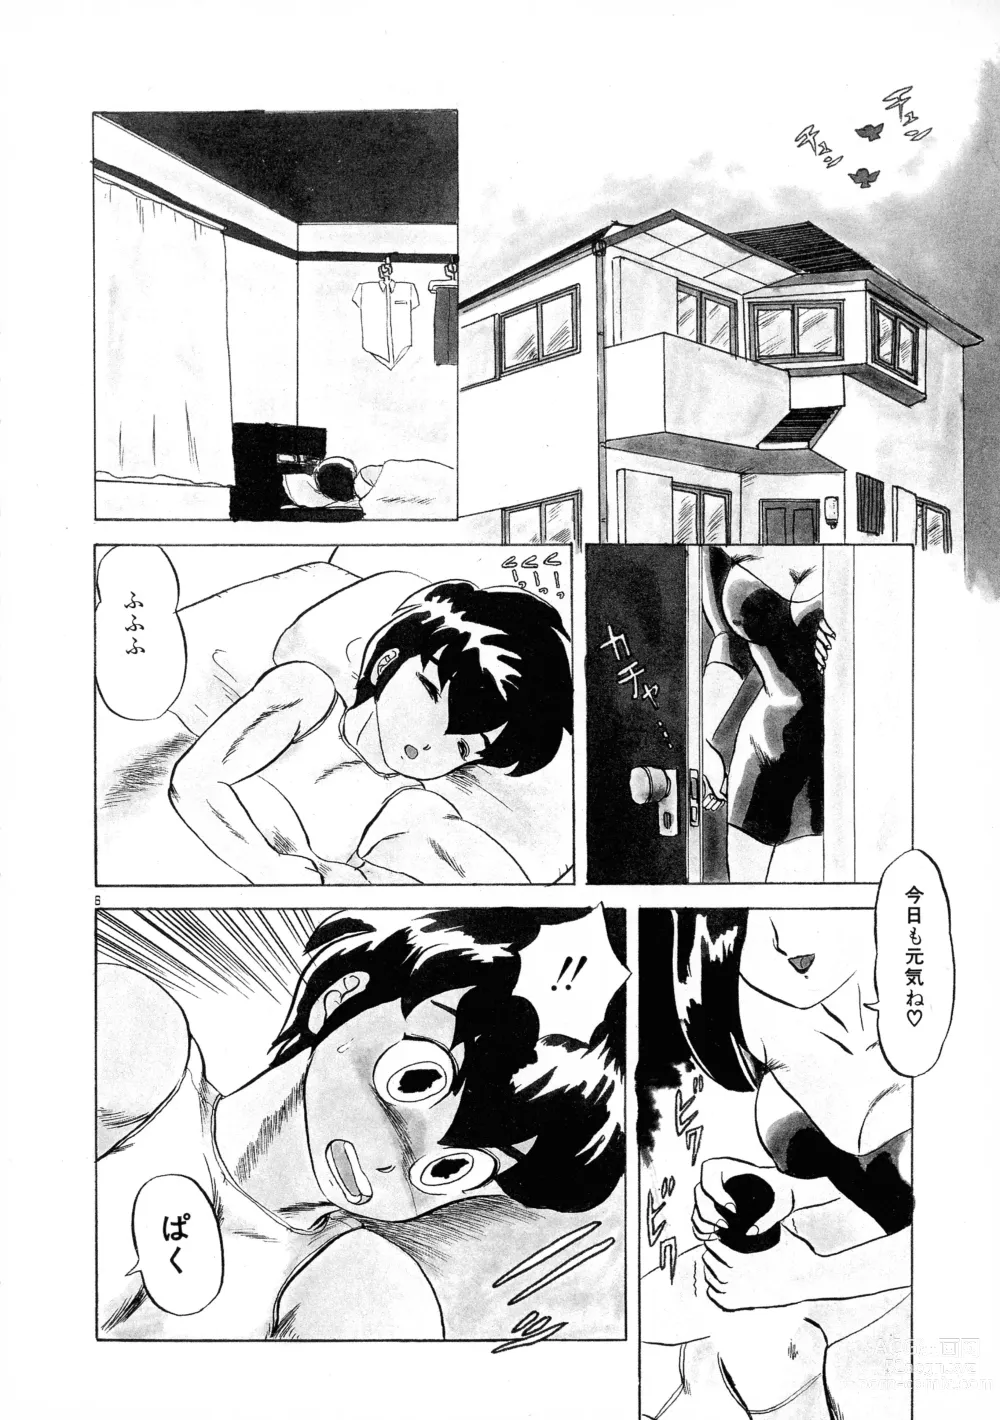 Page 6 of manga Akai Miwaku